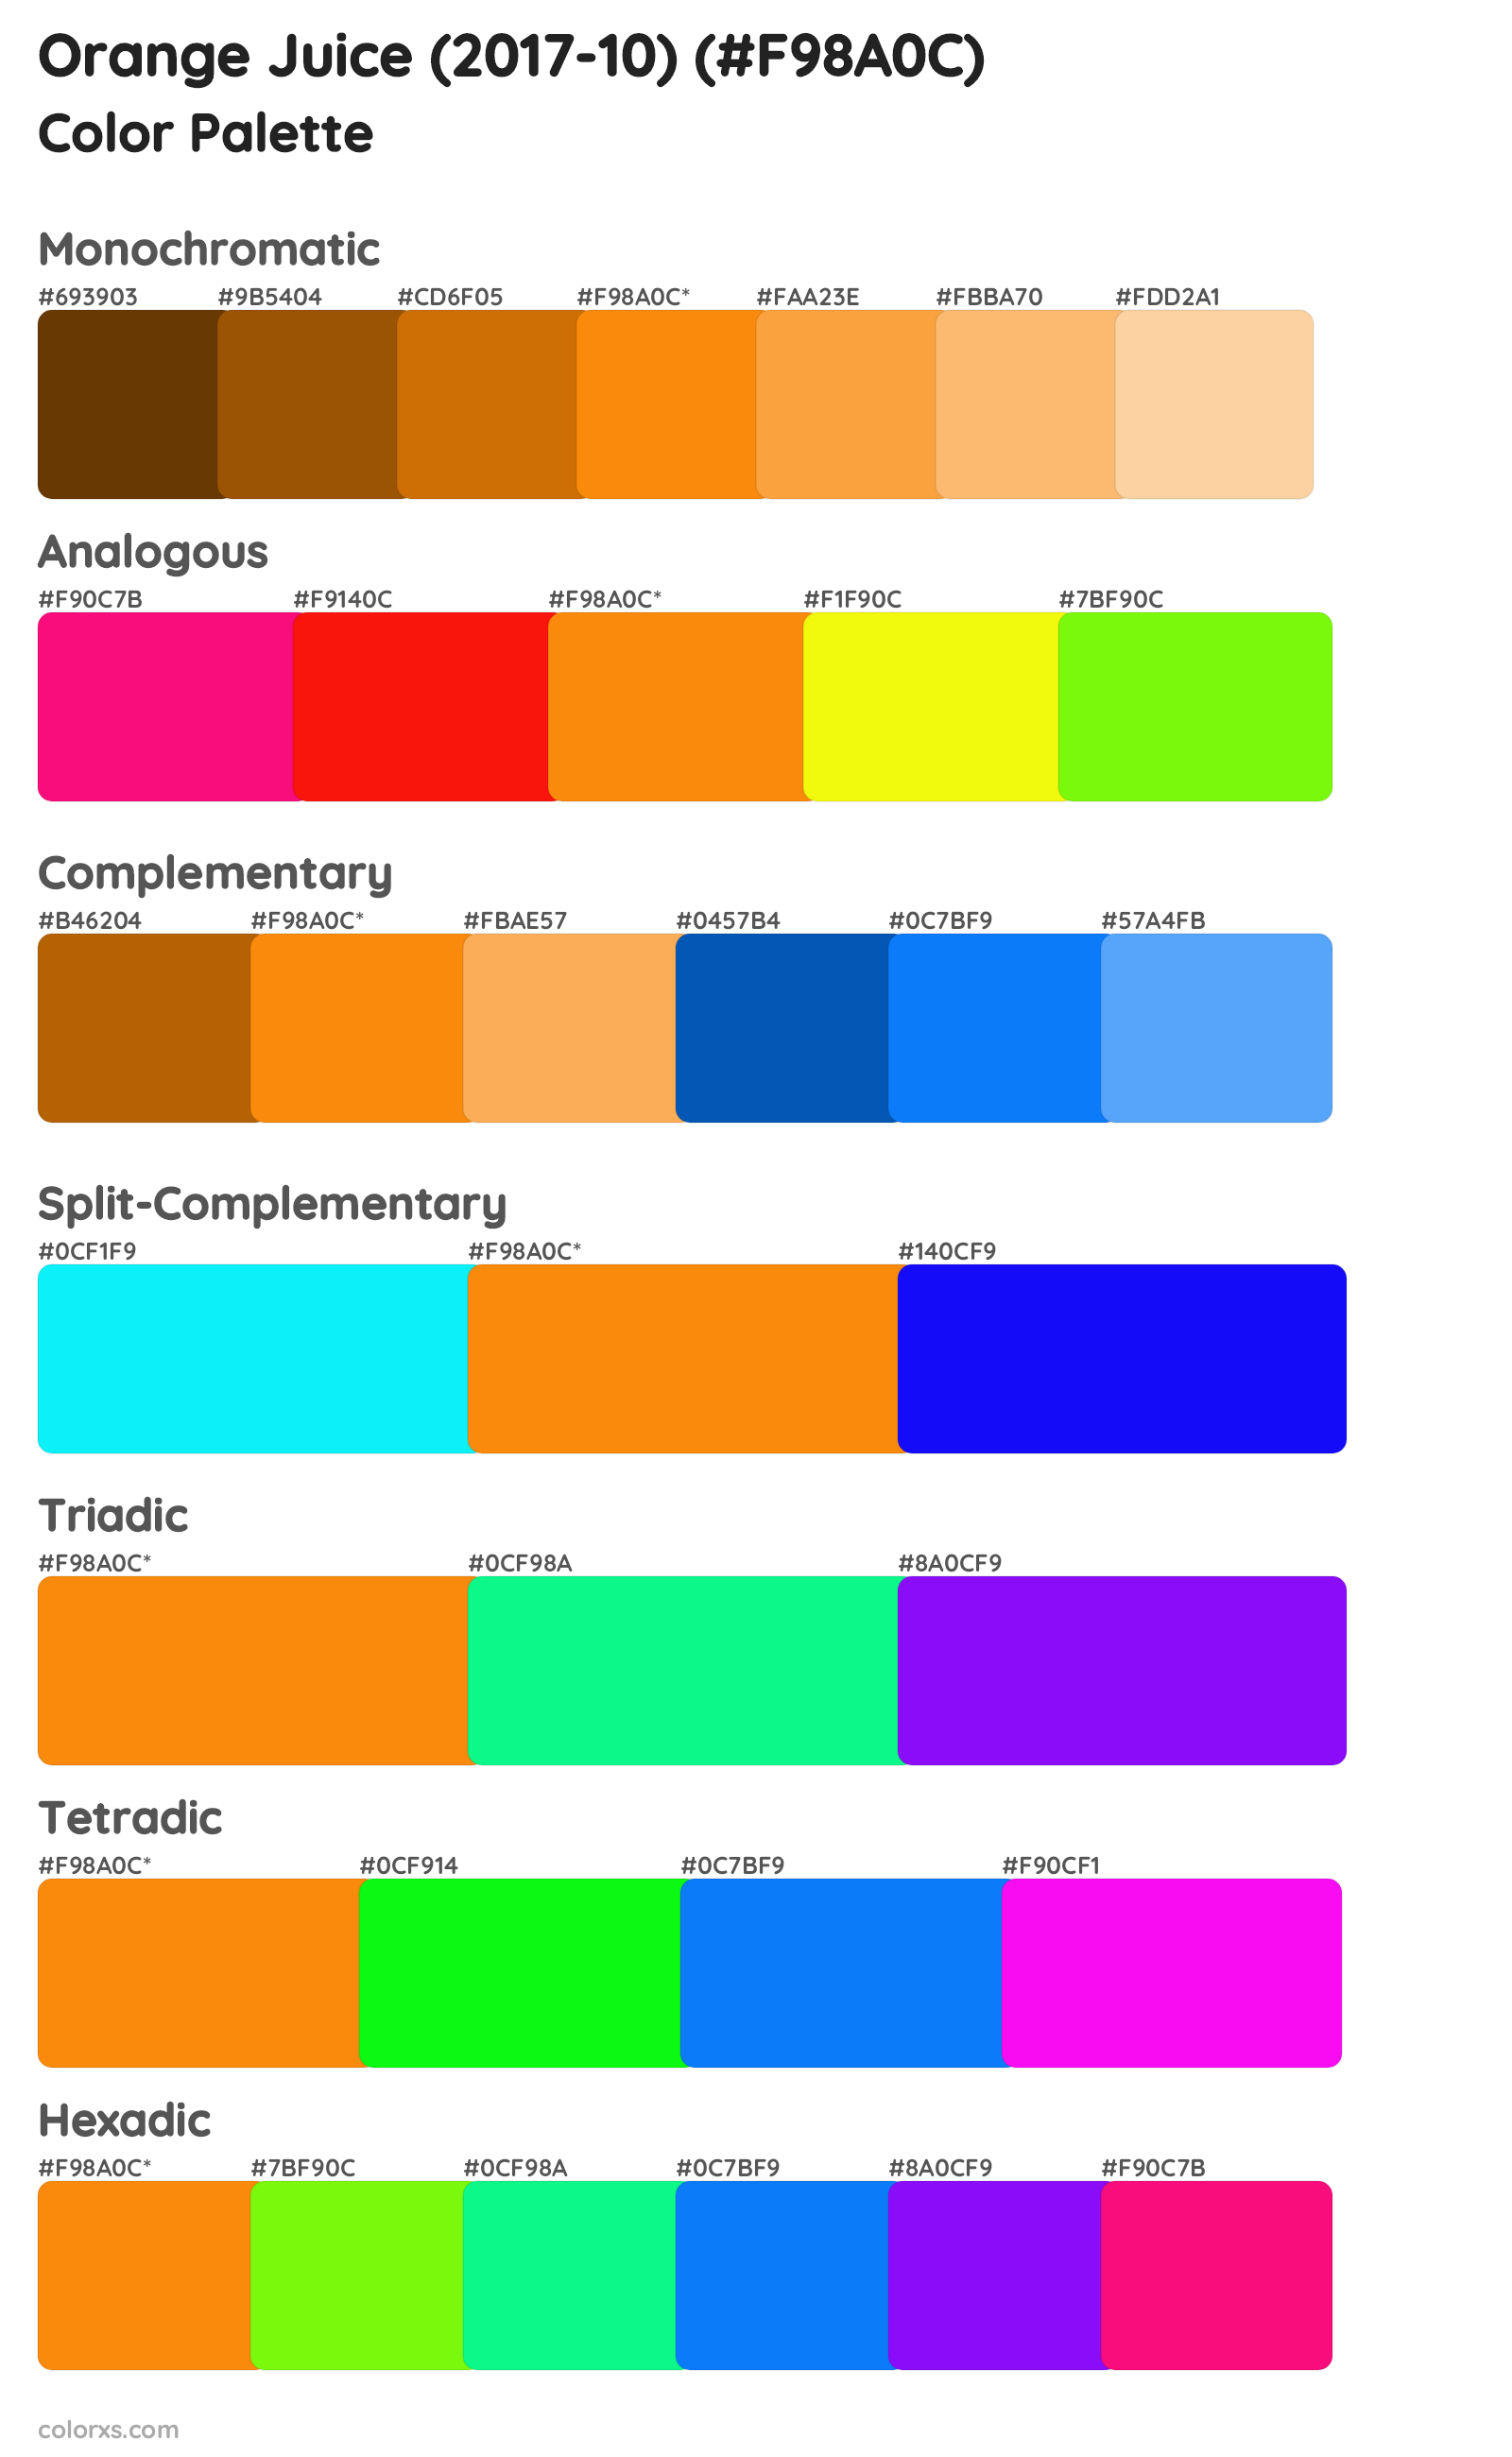 Orange Juice (2017-10) Color Scheme Palettes